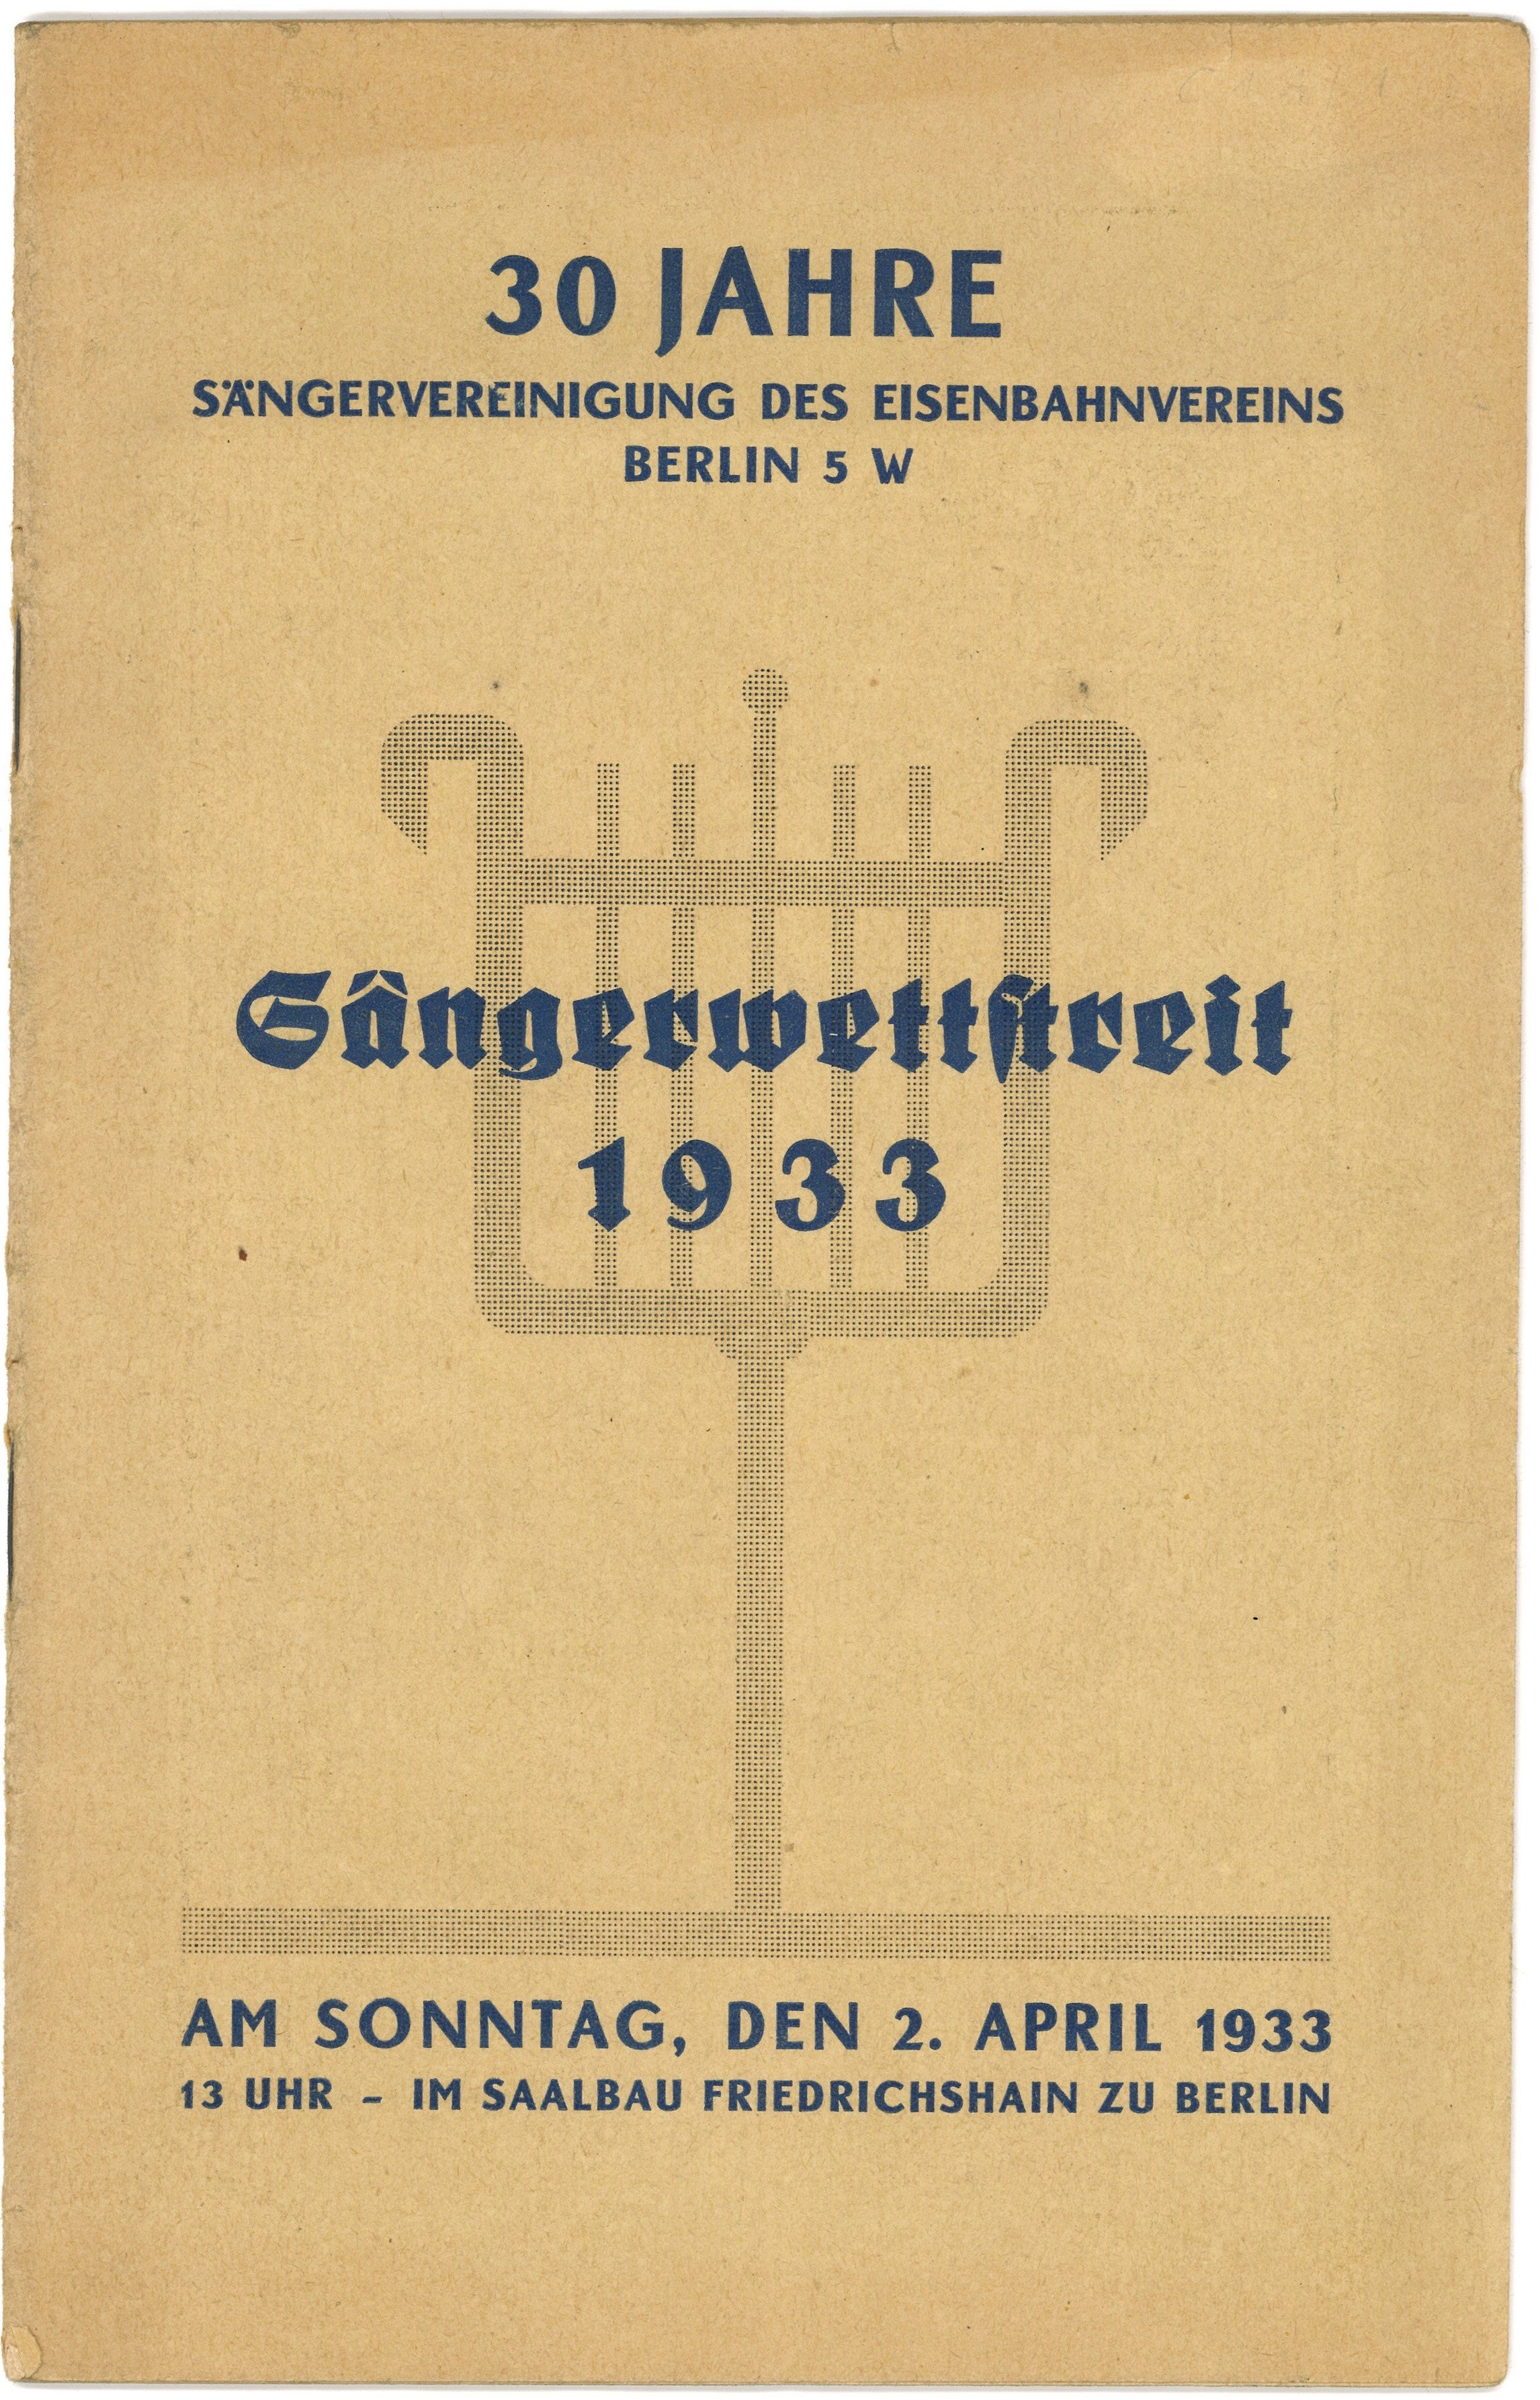 Programmheft für den Sängerwettstreit in Berlin 1933 (Landesgeschichtliche Vereinigung für die Mark Brandenburg e.V., Archiv CC BY)